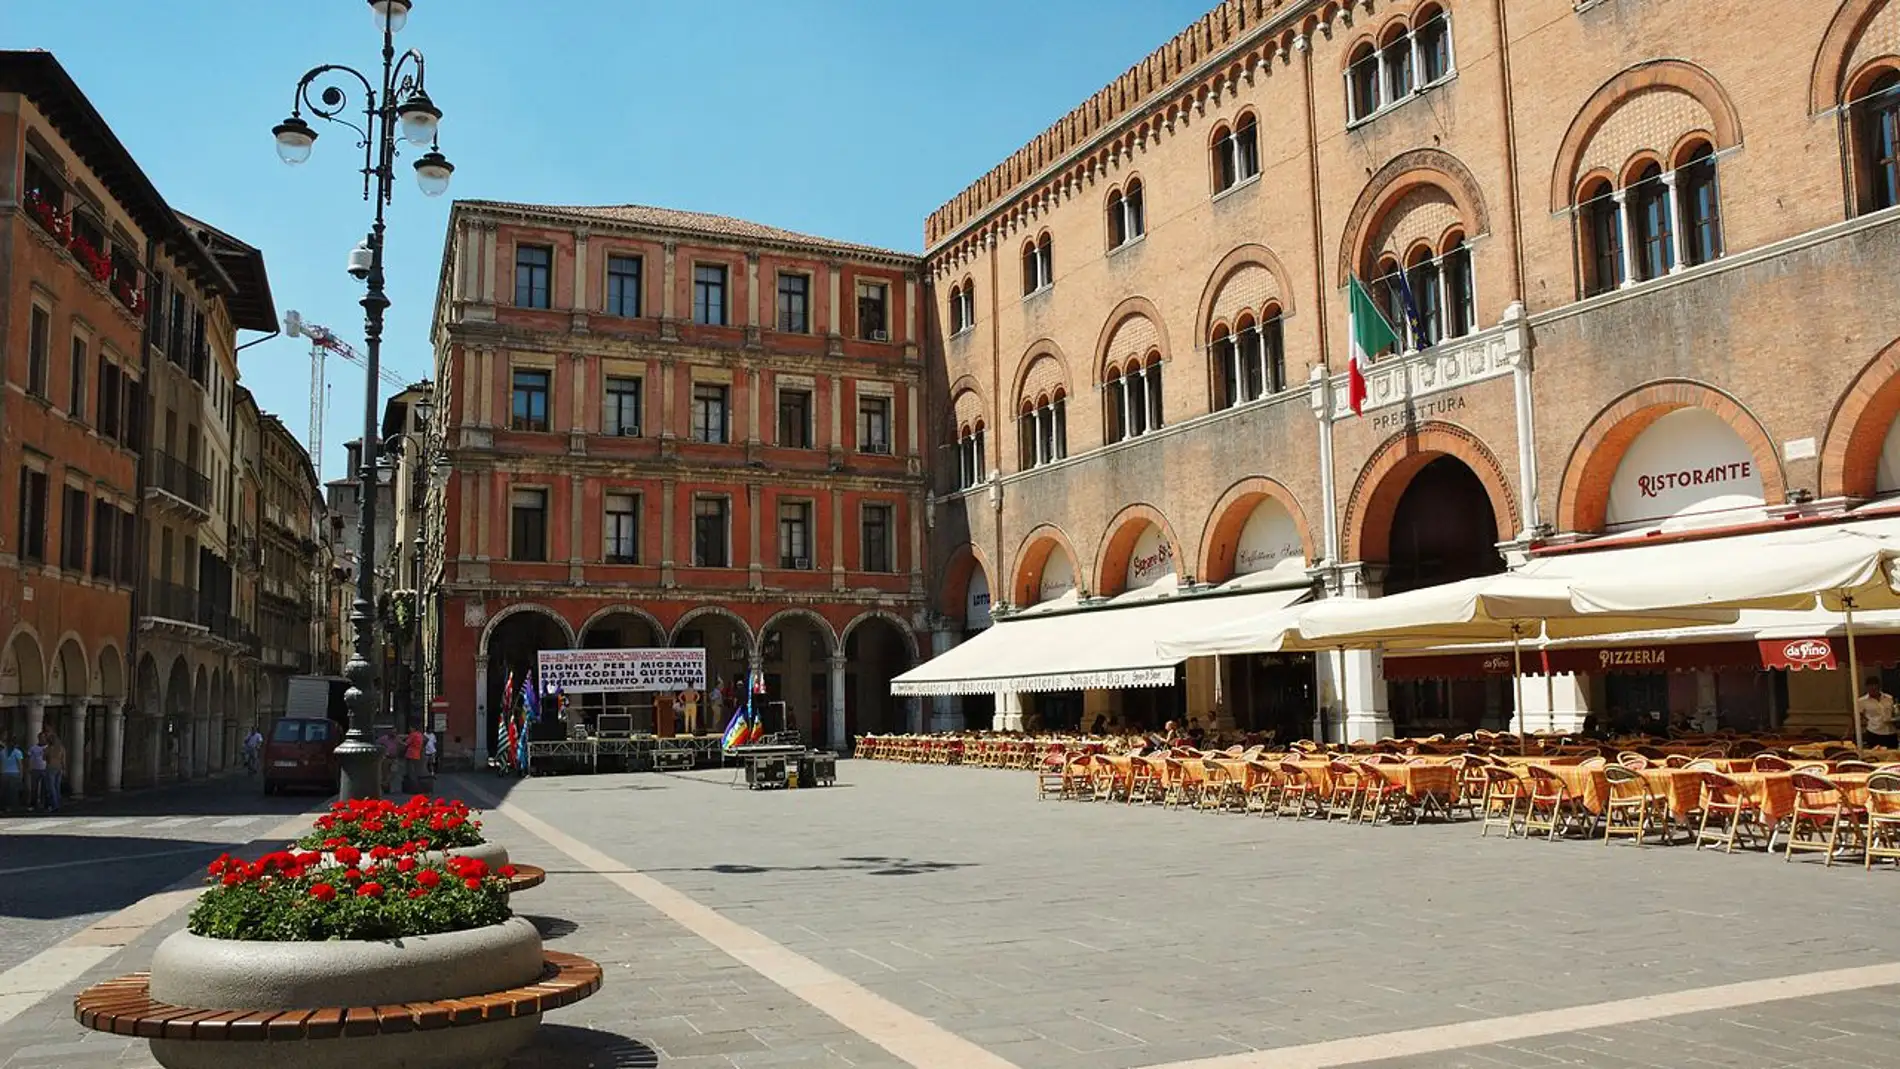 La Piazza dei Signori de Treviso